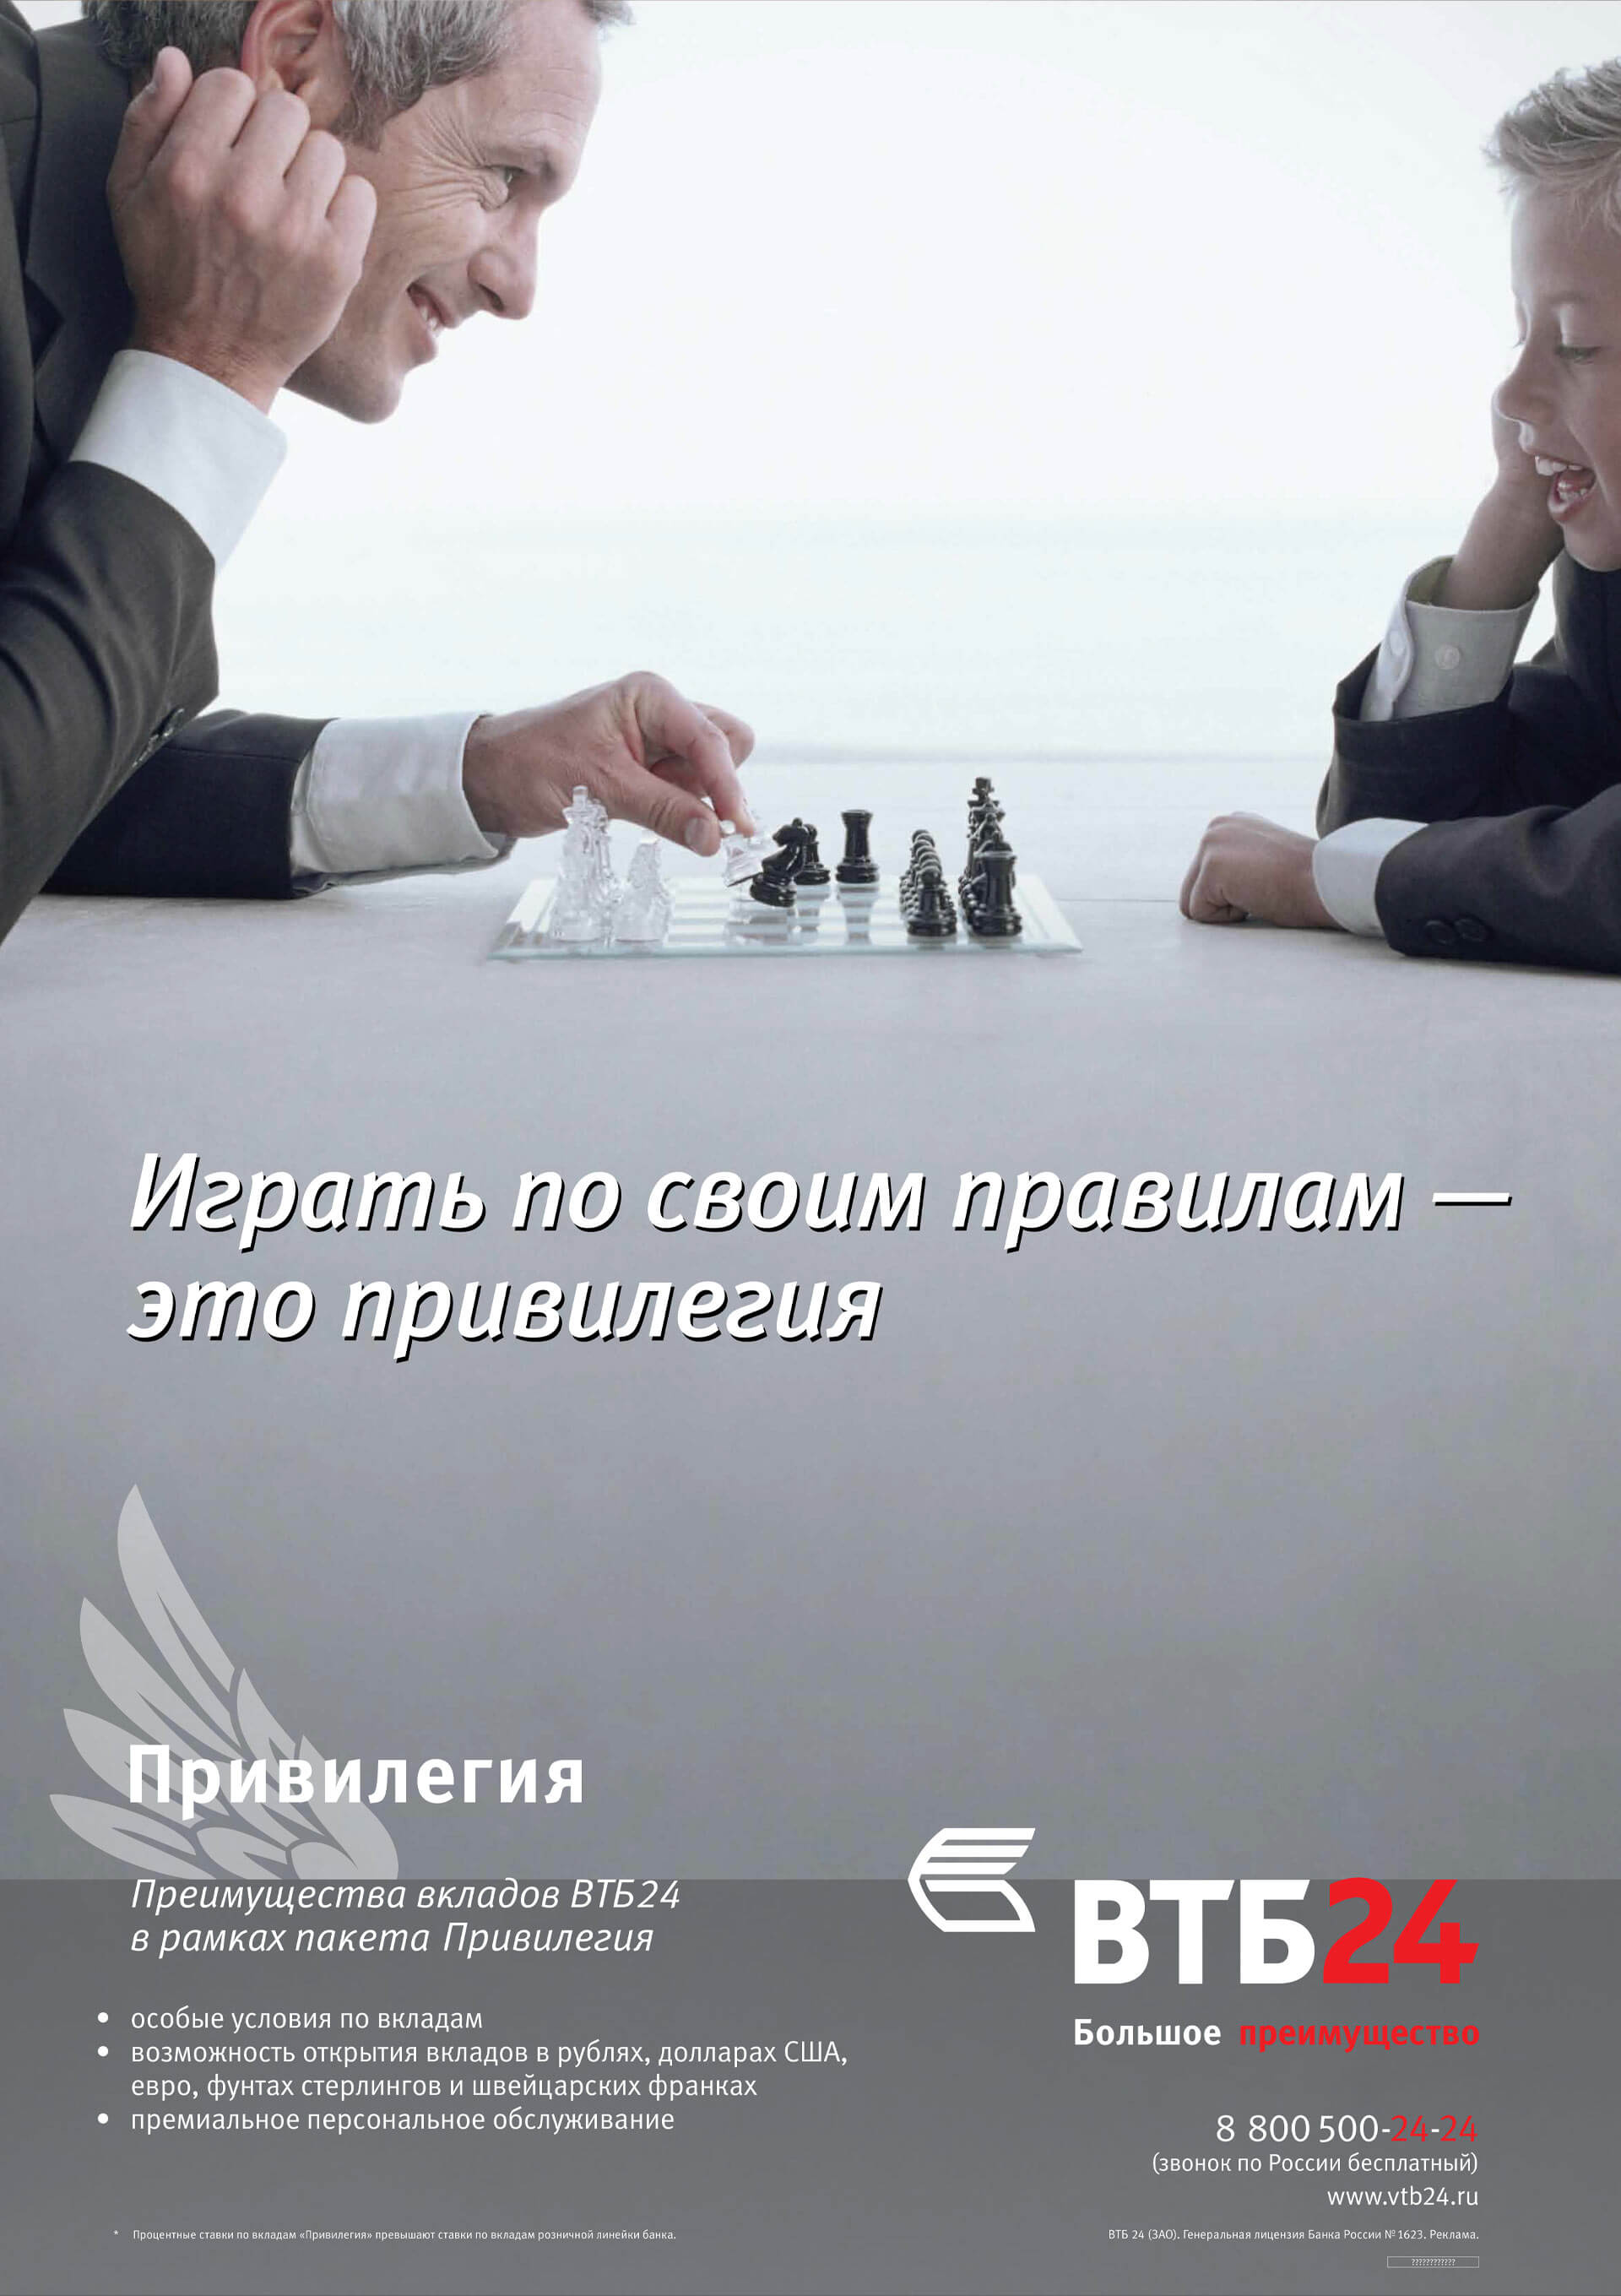  VTB 24 Privilege Russia brand identity marketing material